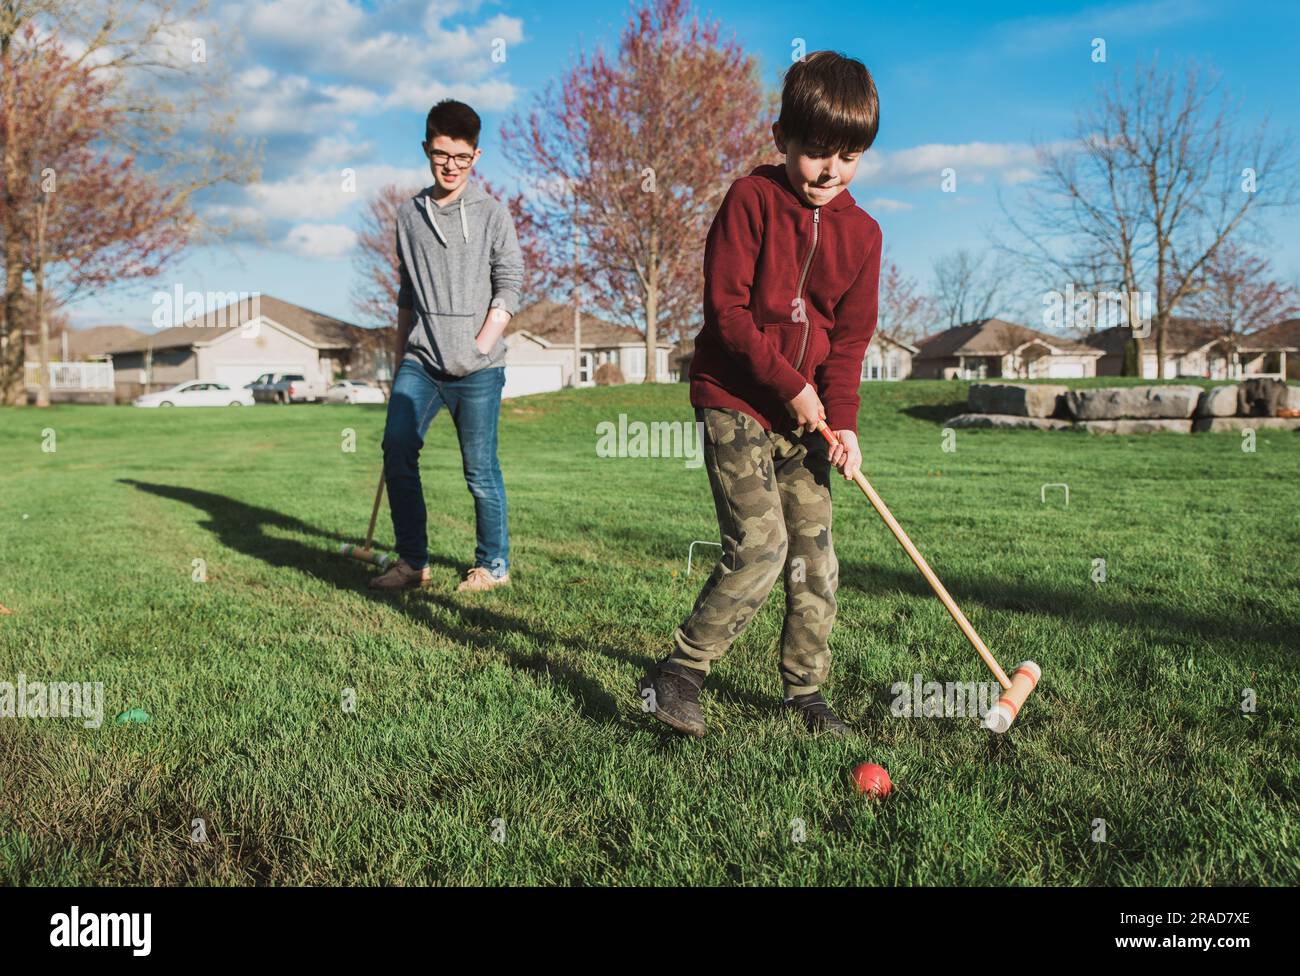 Deux garçons jouant ensemble un jeu de croquet dans un parc. Banque D'Images